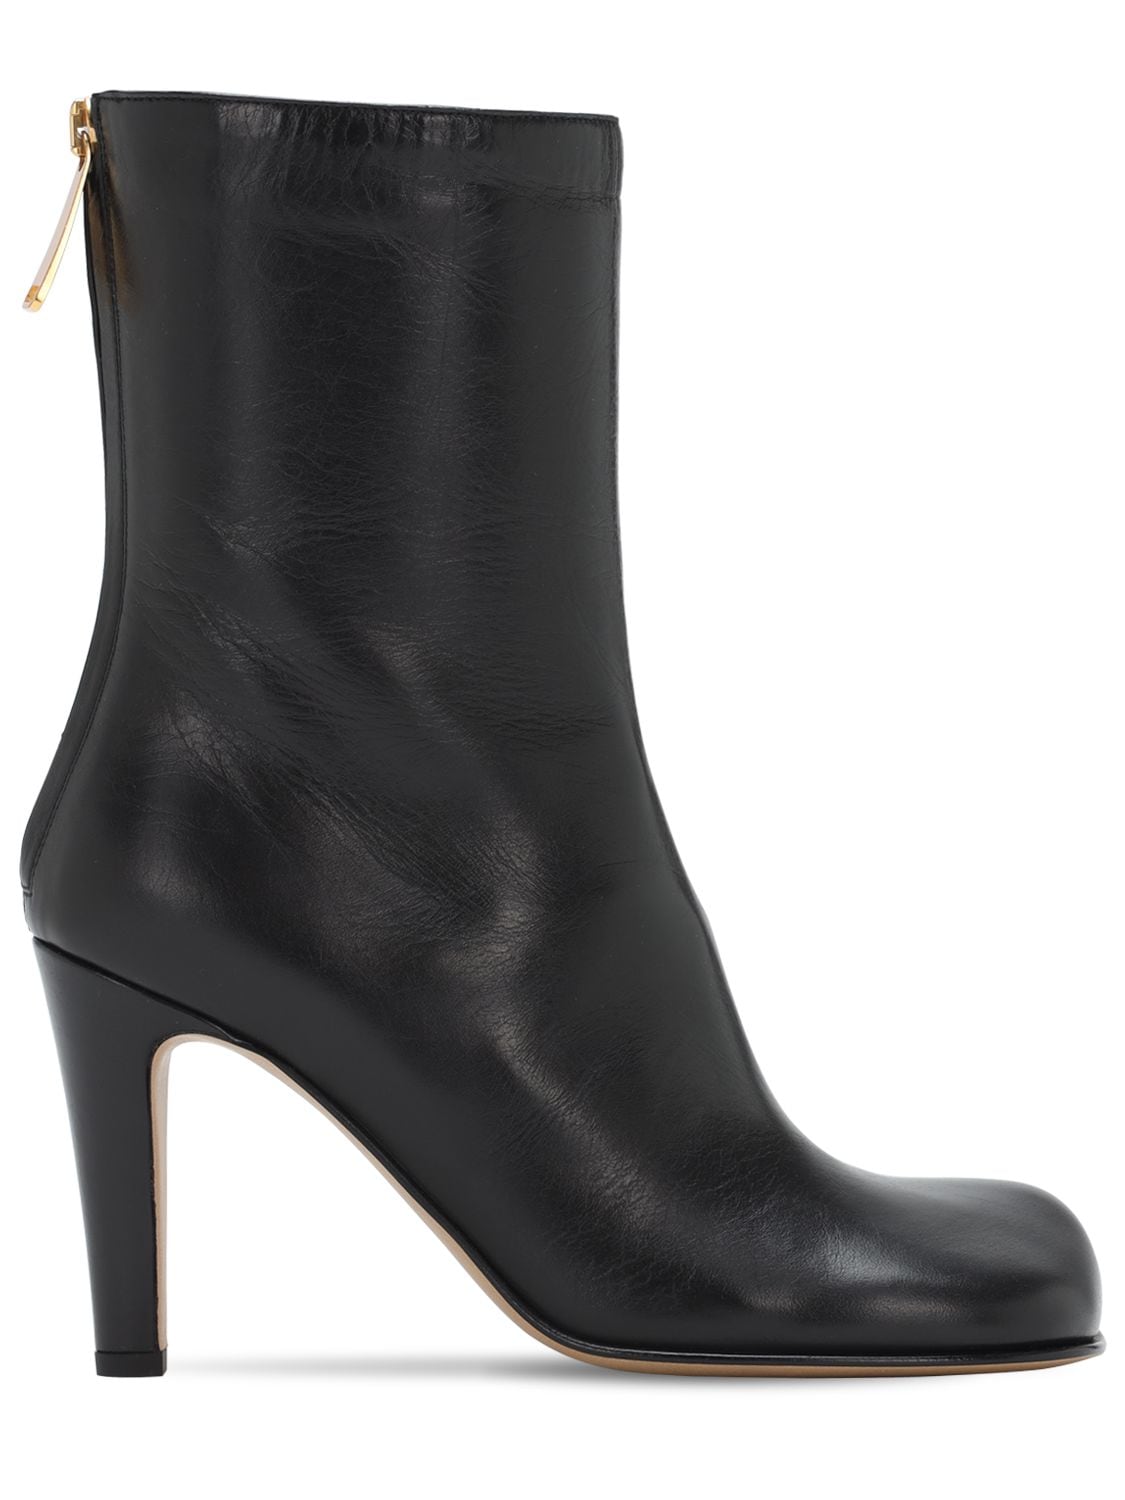 Bottega Veneta - 90mm leather ankle boots - Black | Luisaviaroma